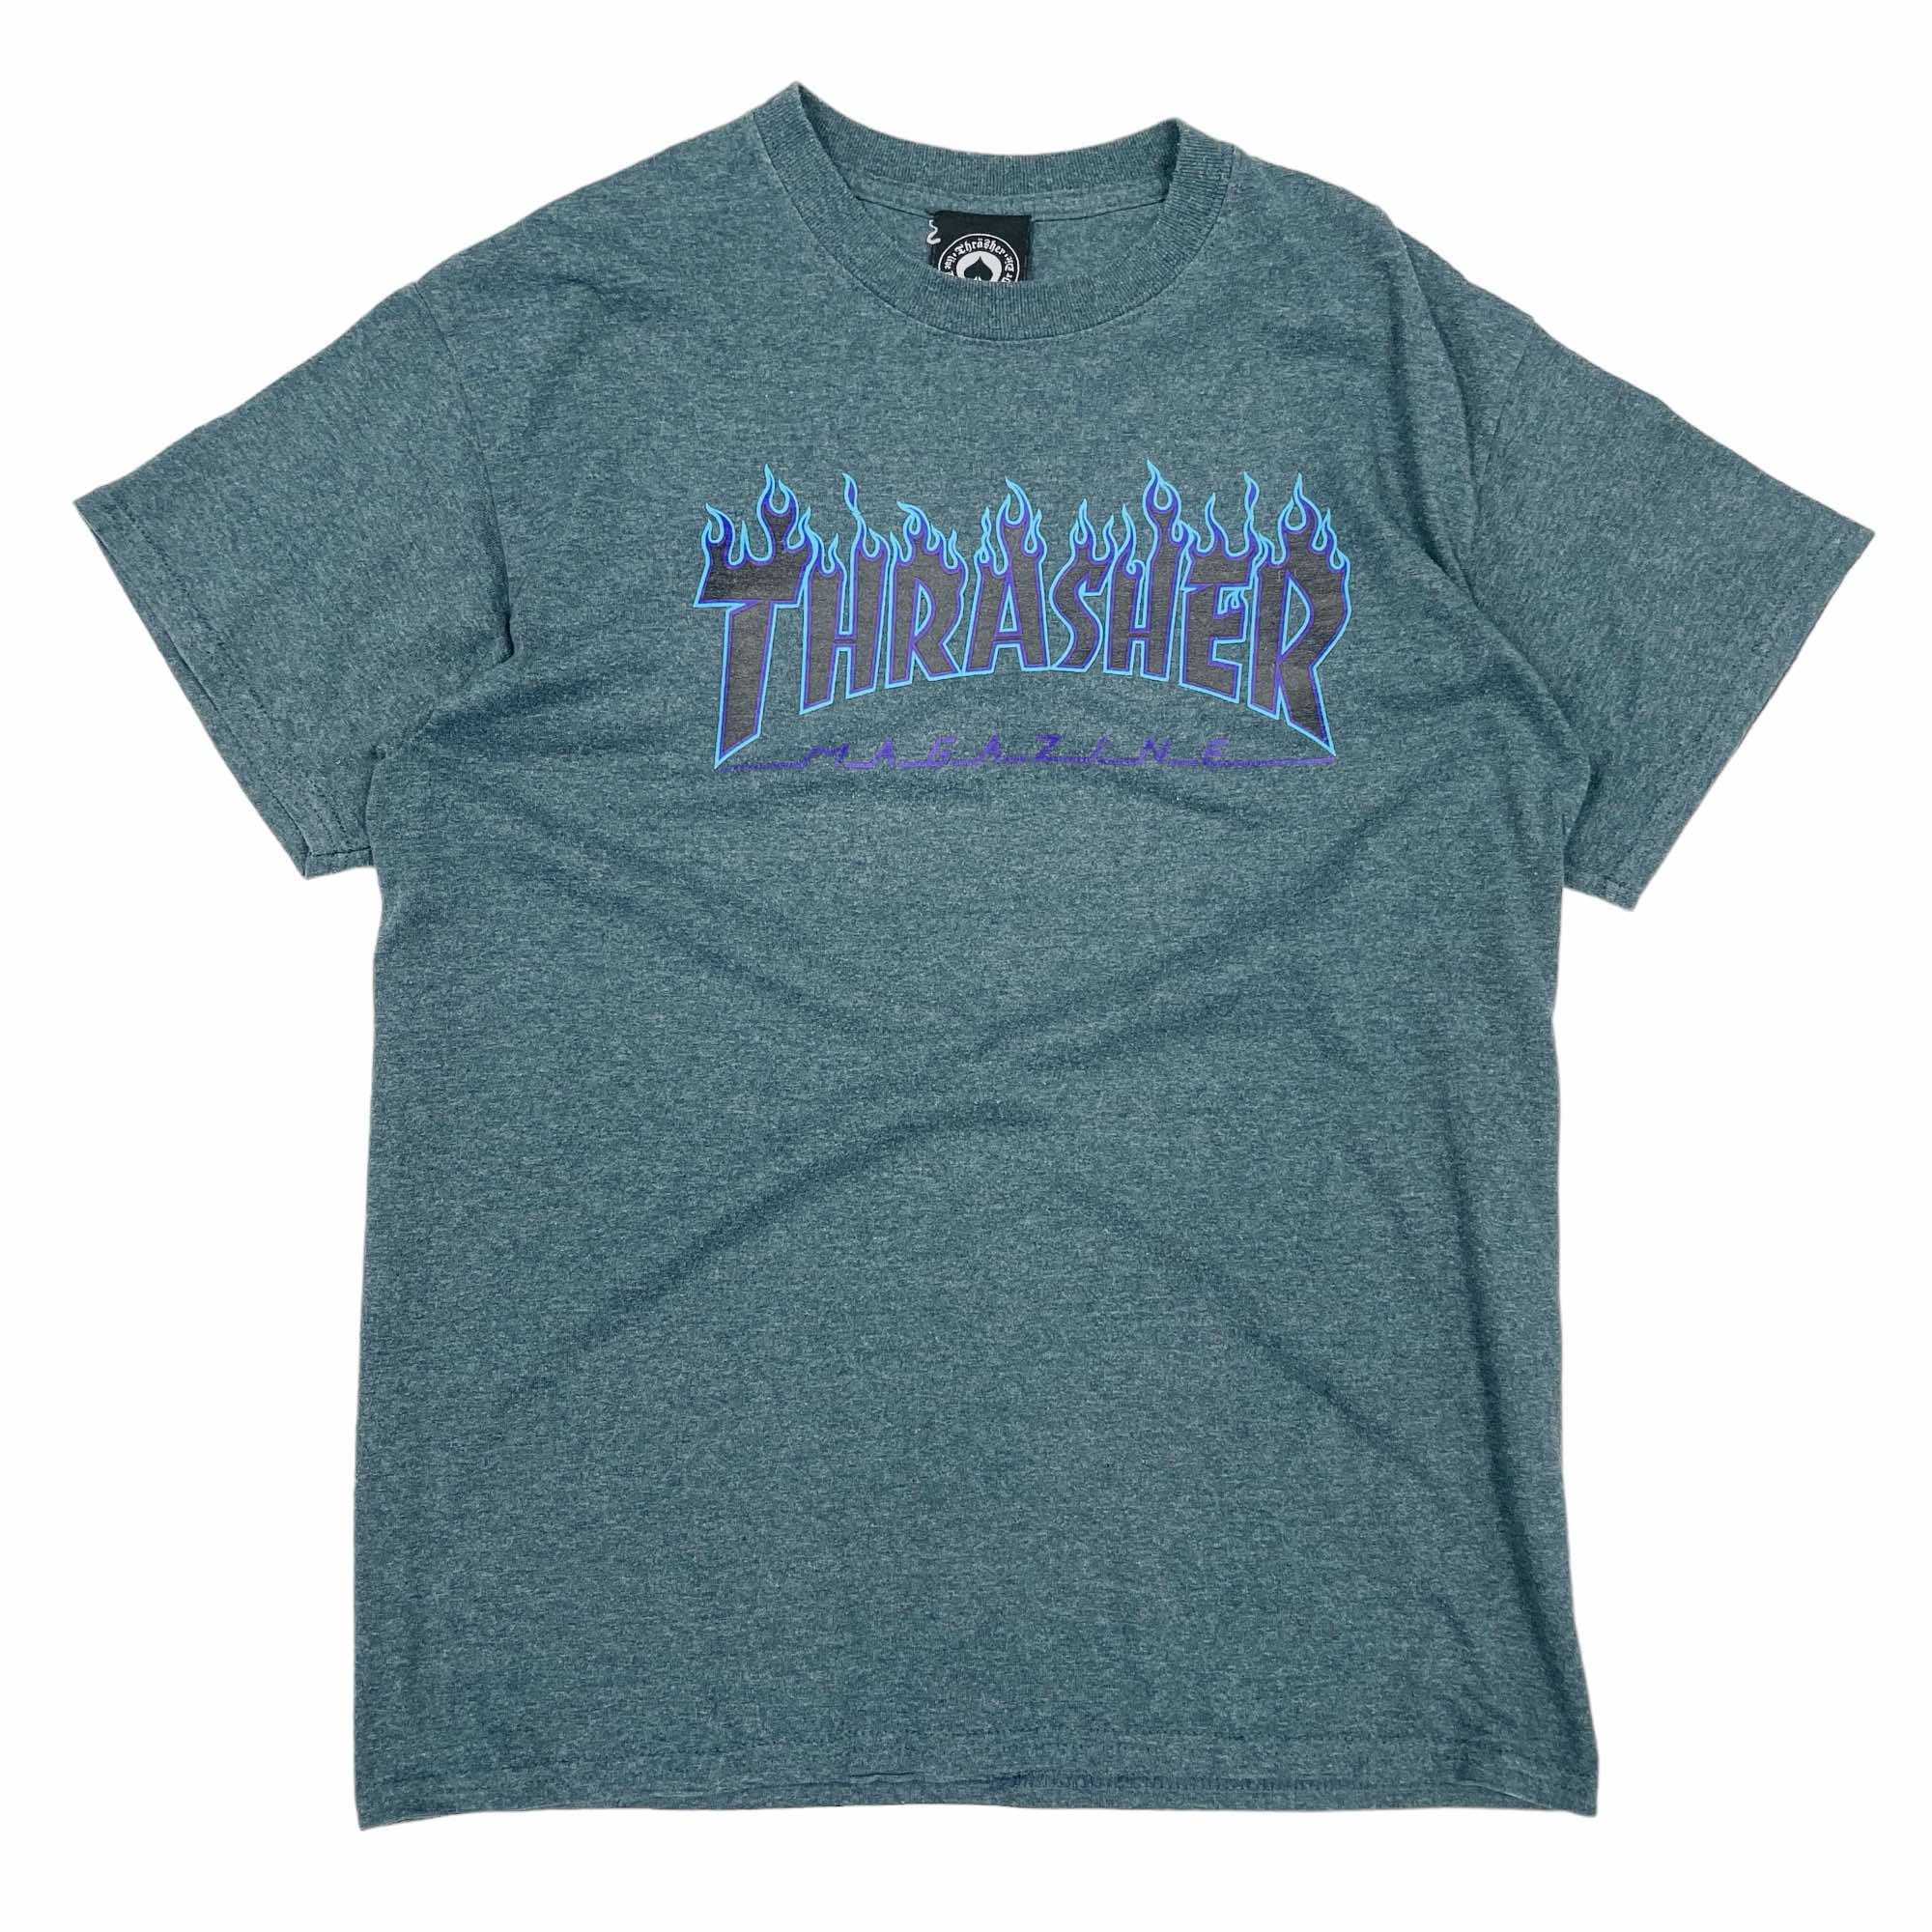 Thrasher T-Shirt - Medium